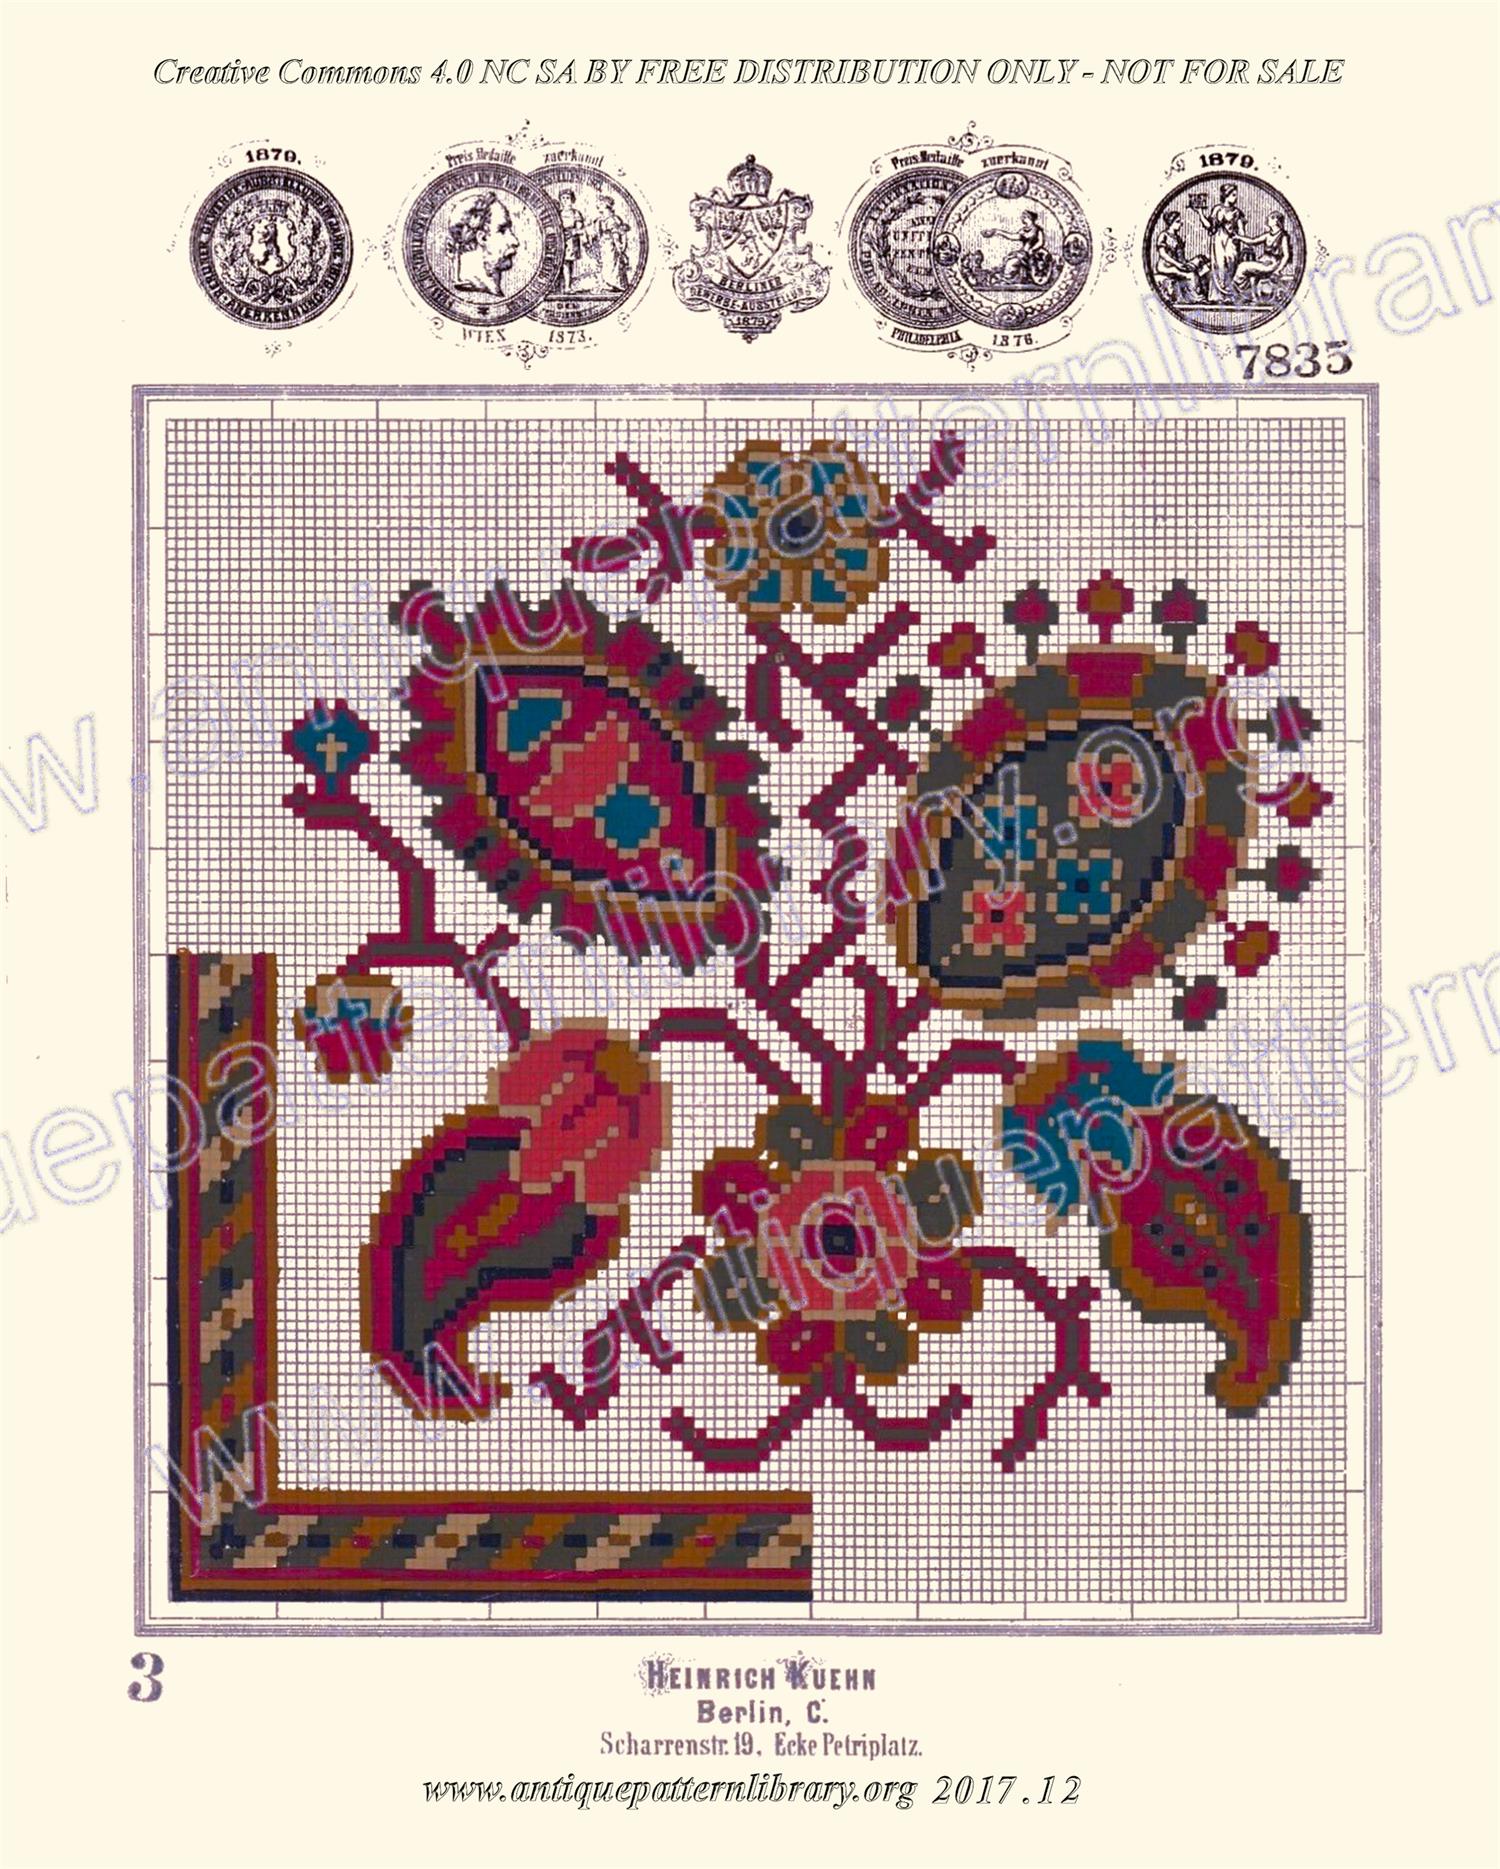 H-HB002 Small Persian tapestry motif